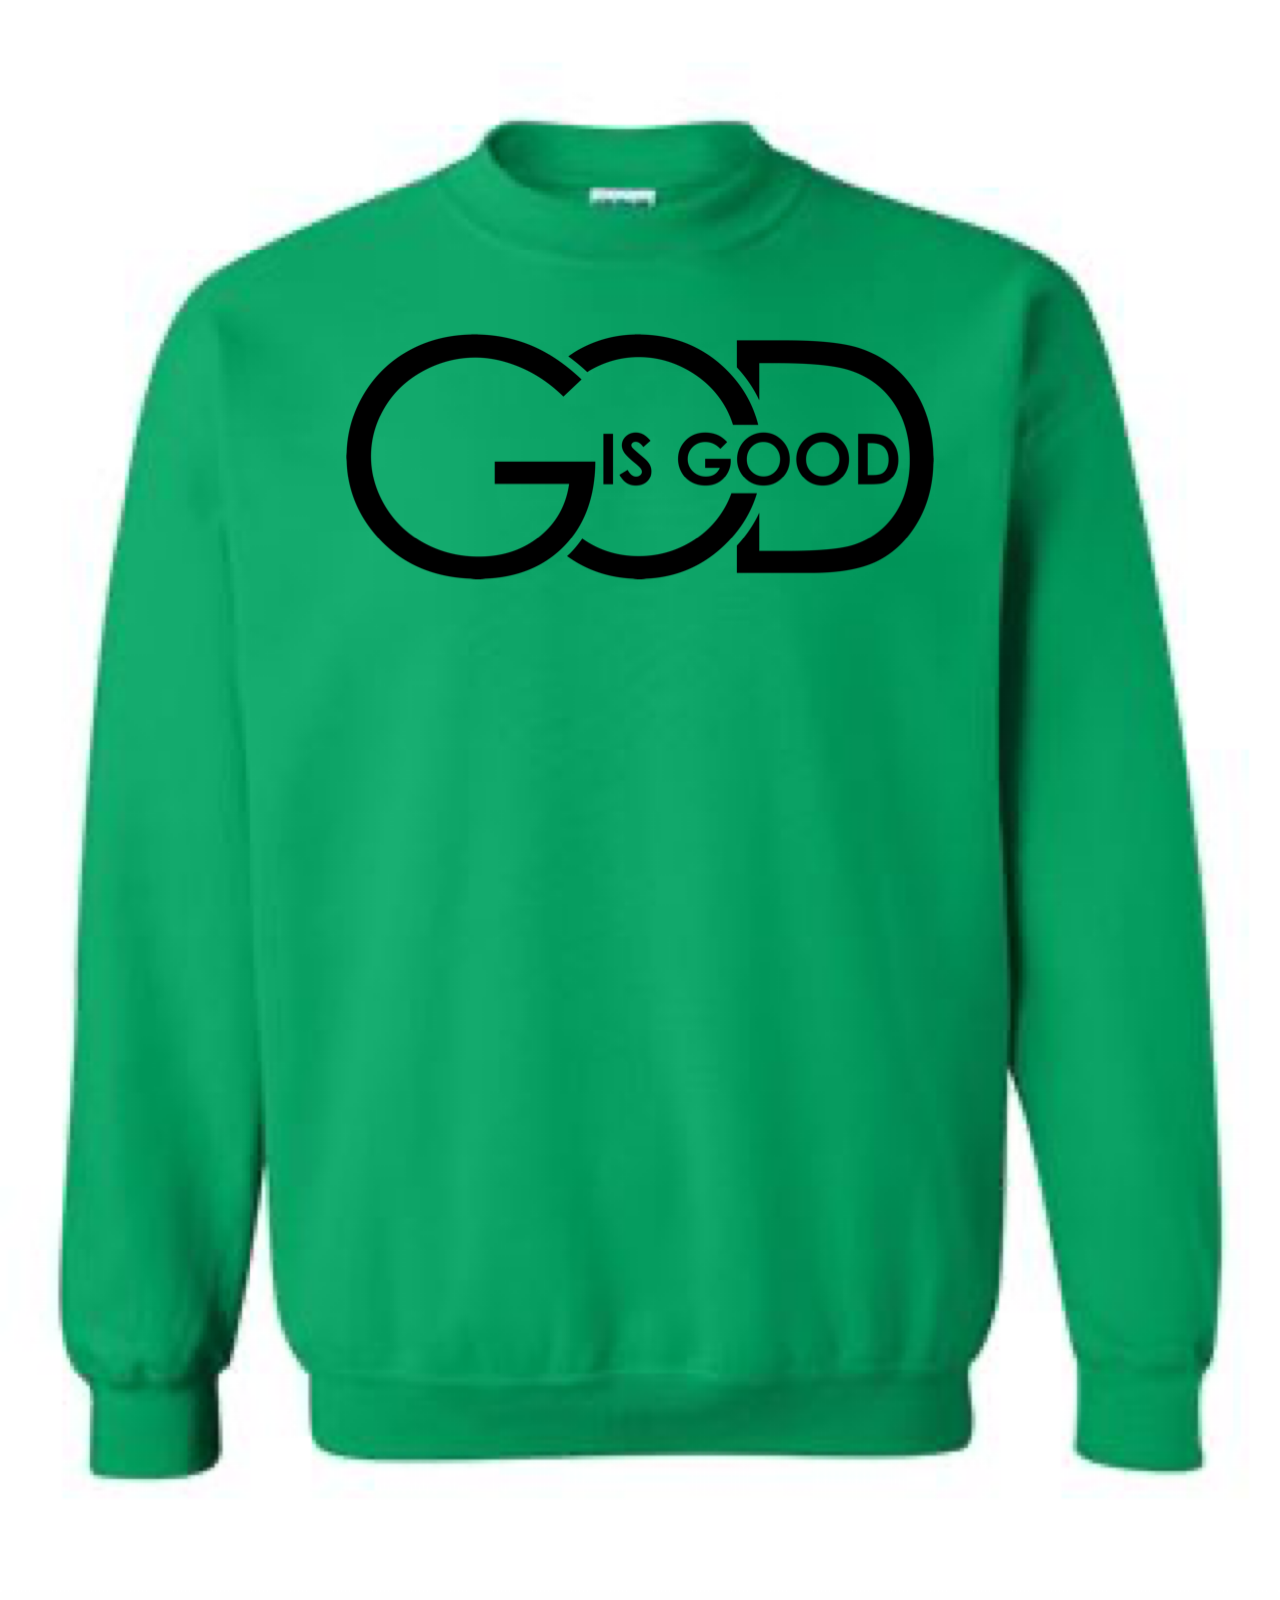 Men's God is Good Crewneck Sweatshirt